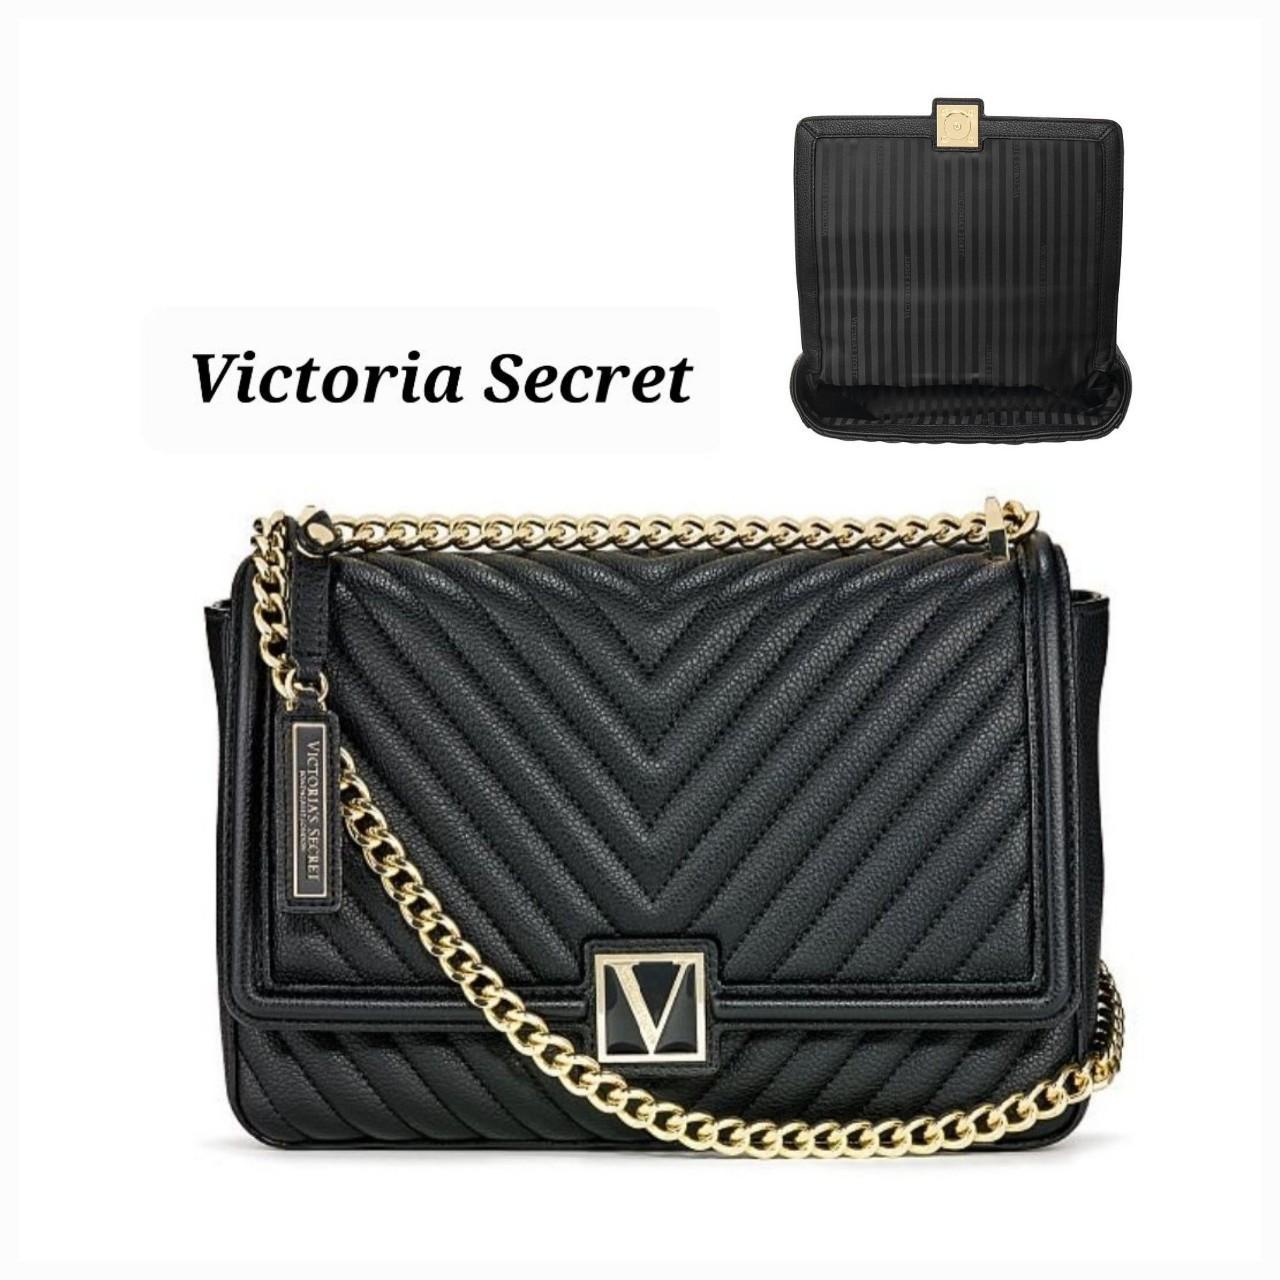 victoria secret shoulder bag black